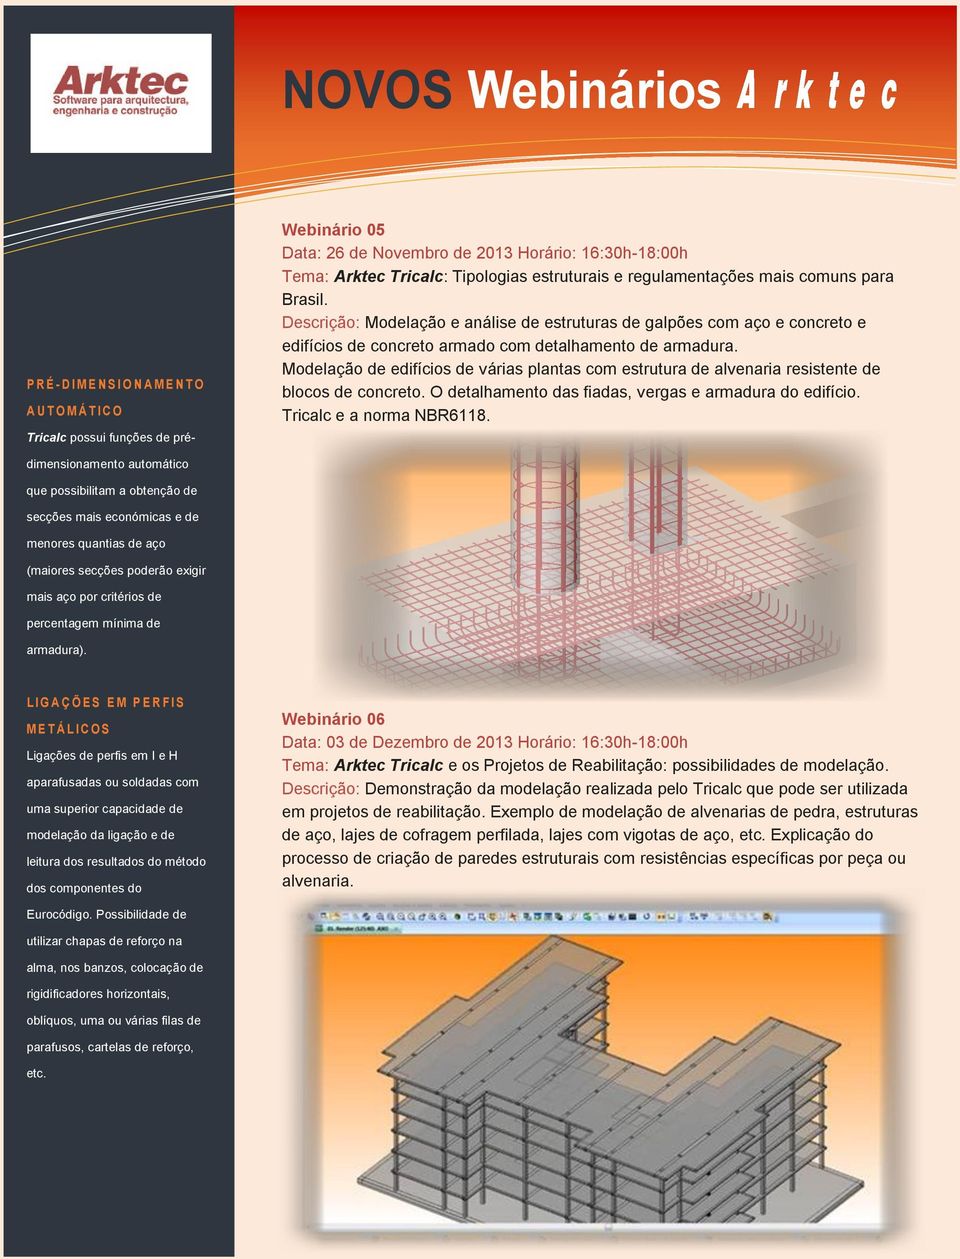 Modelação de edifícios de várias plantas com estrutura de alvenaria resistente de blocos de concreto. O detalhamento das fiadas, vergas e armadura do edifício. Tricalc e a norma NBR6118.